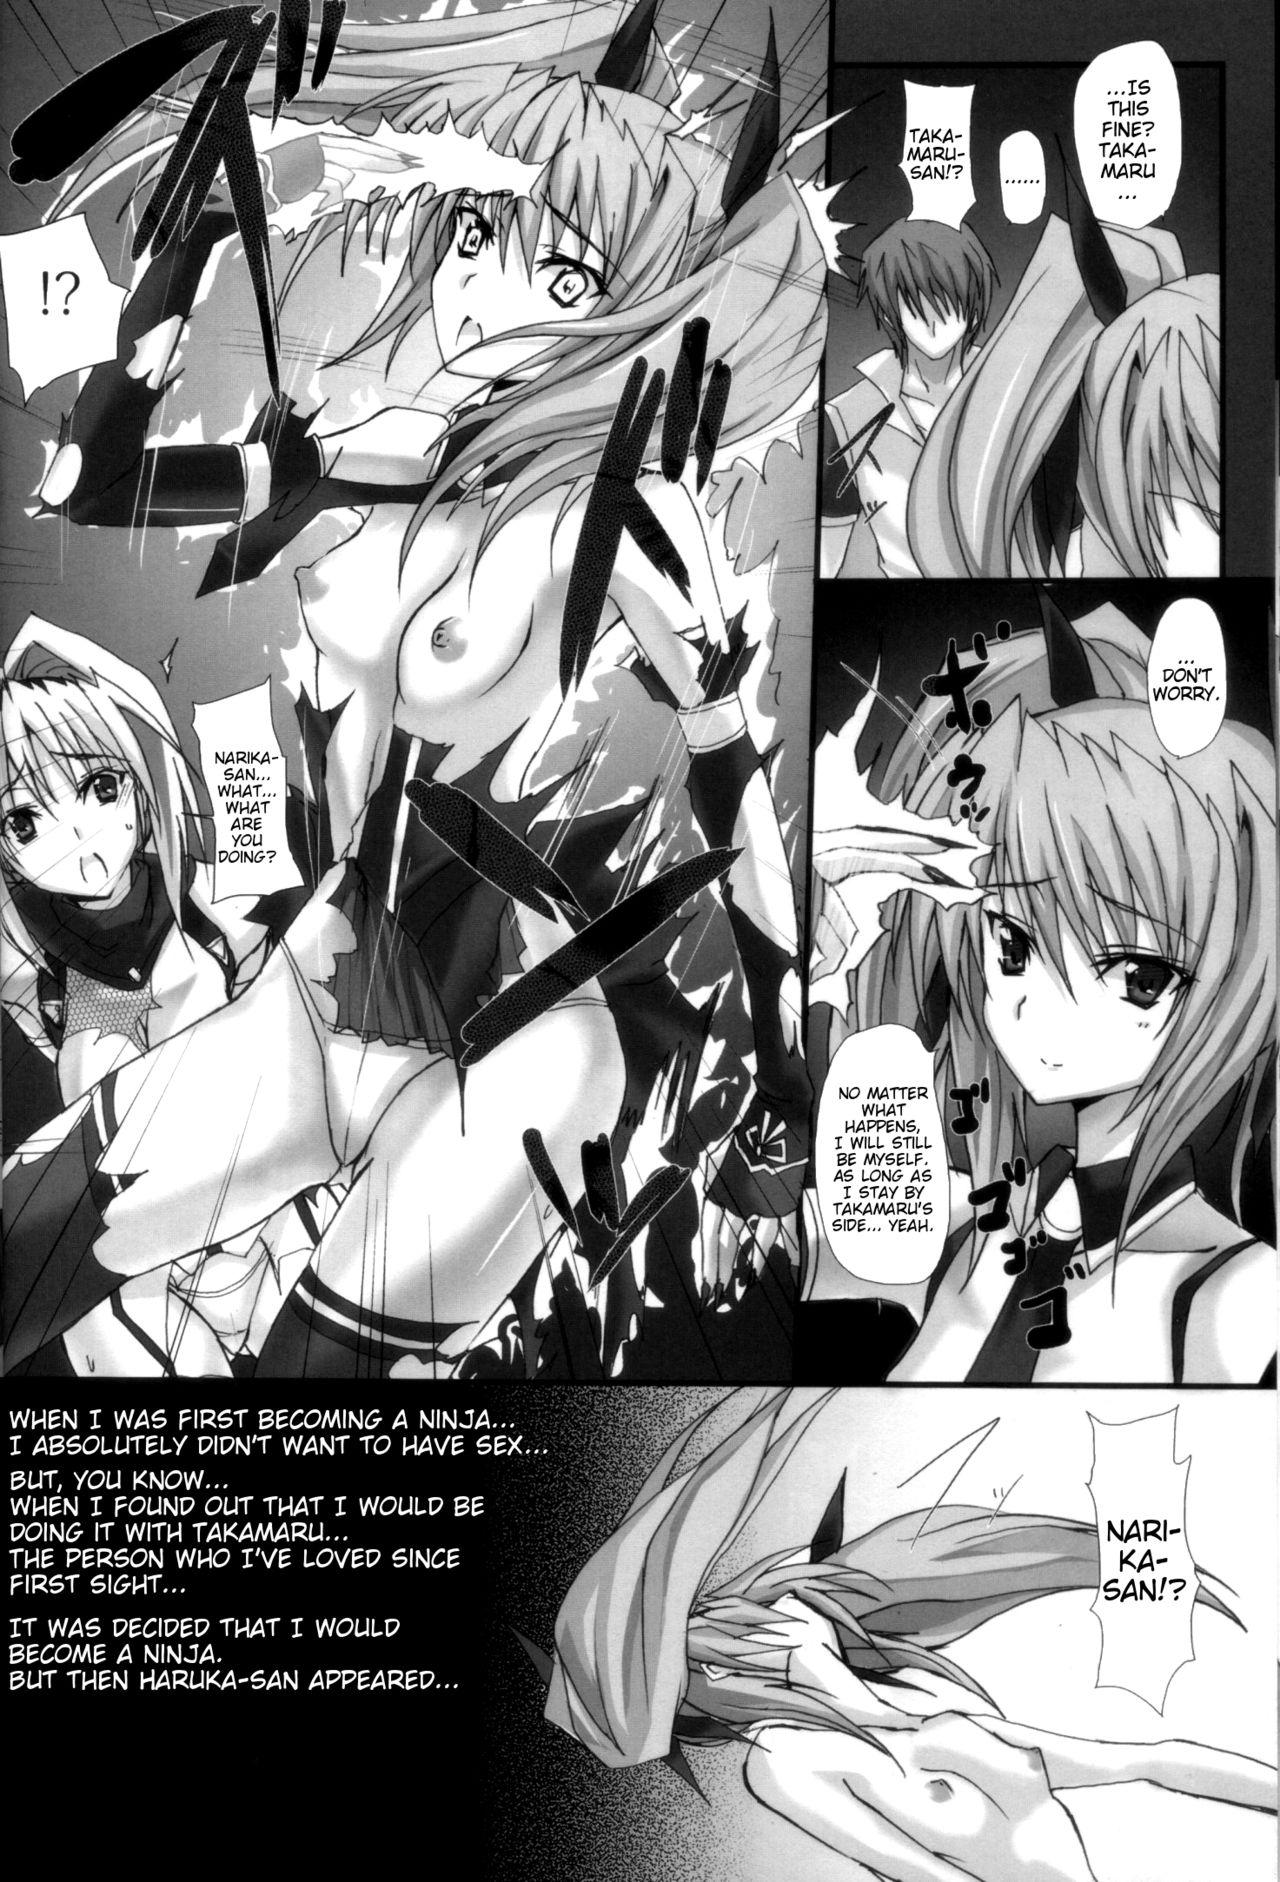 Trans Yami wo Matoishi Homura wa Ono ga Mi wo Boukyaku no Gokuen e - Beat blades haruka Brazzers - Page 11